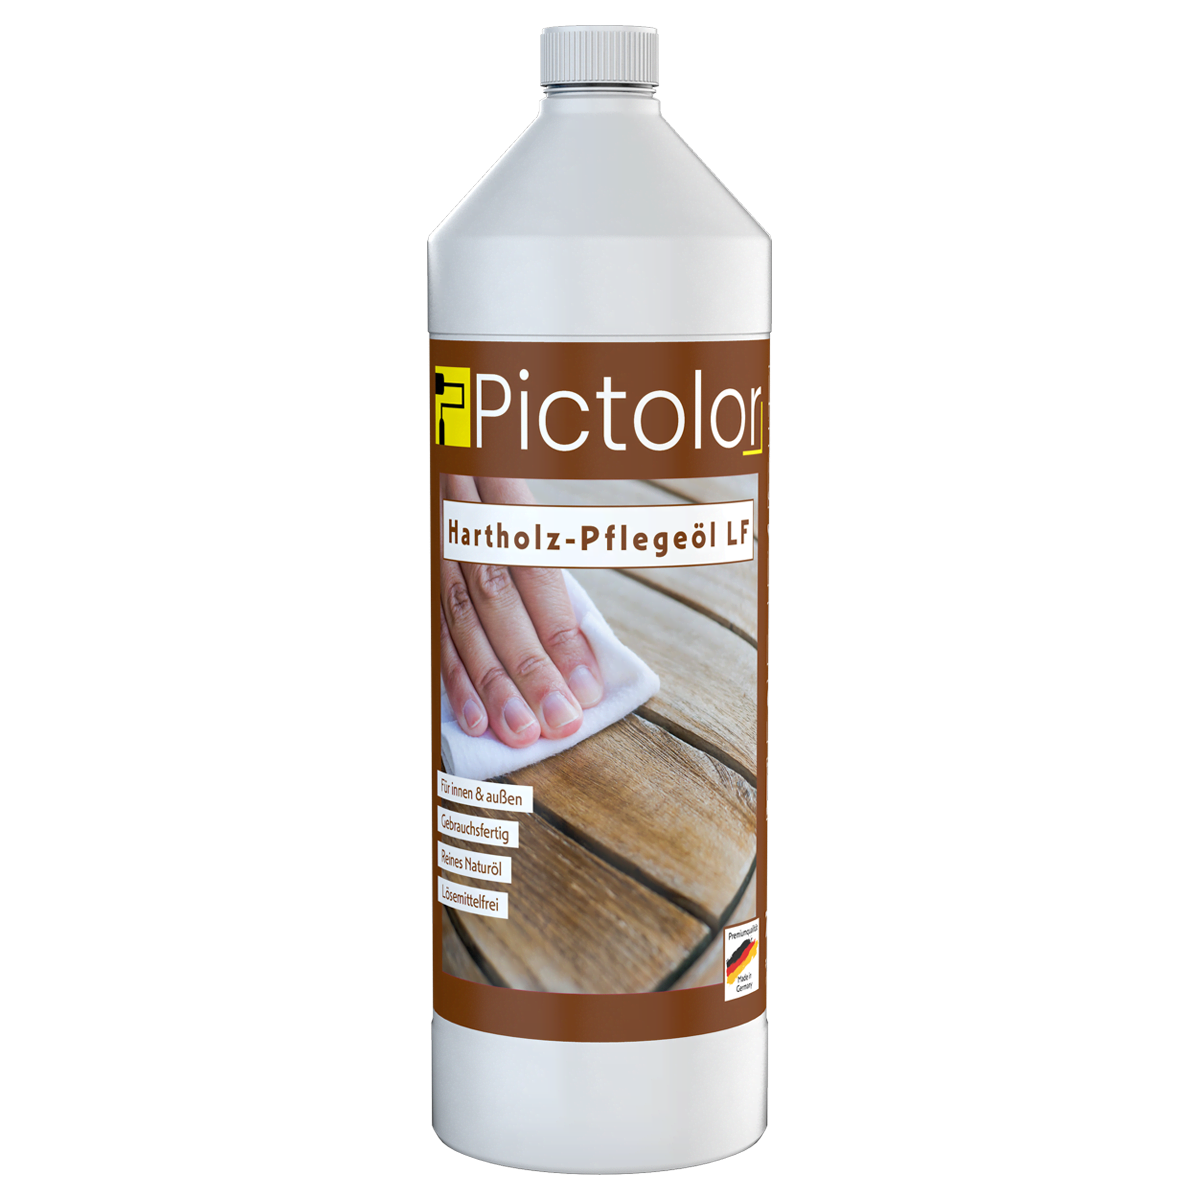 Pictolor® Hartholz Pflegeöl von Pictolor